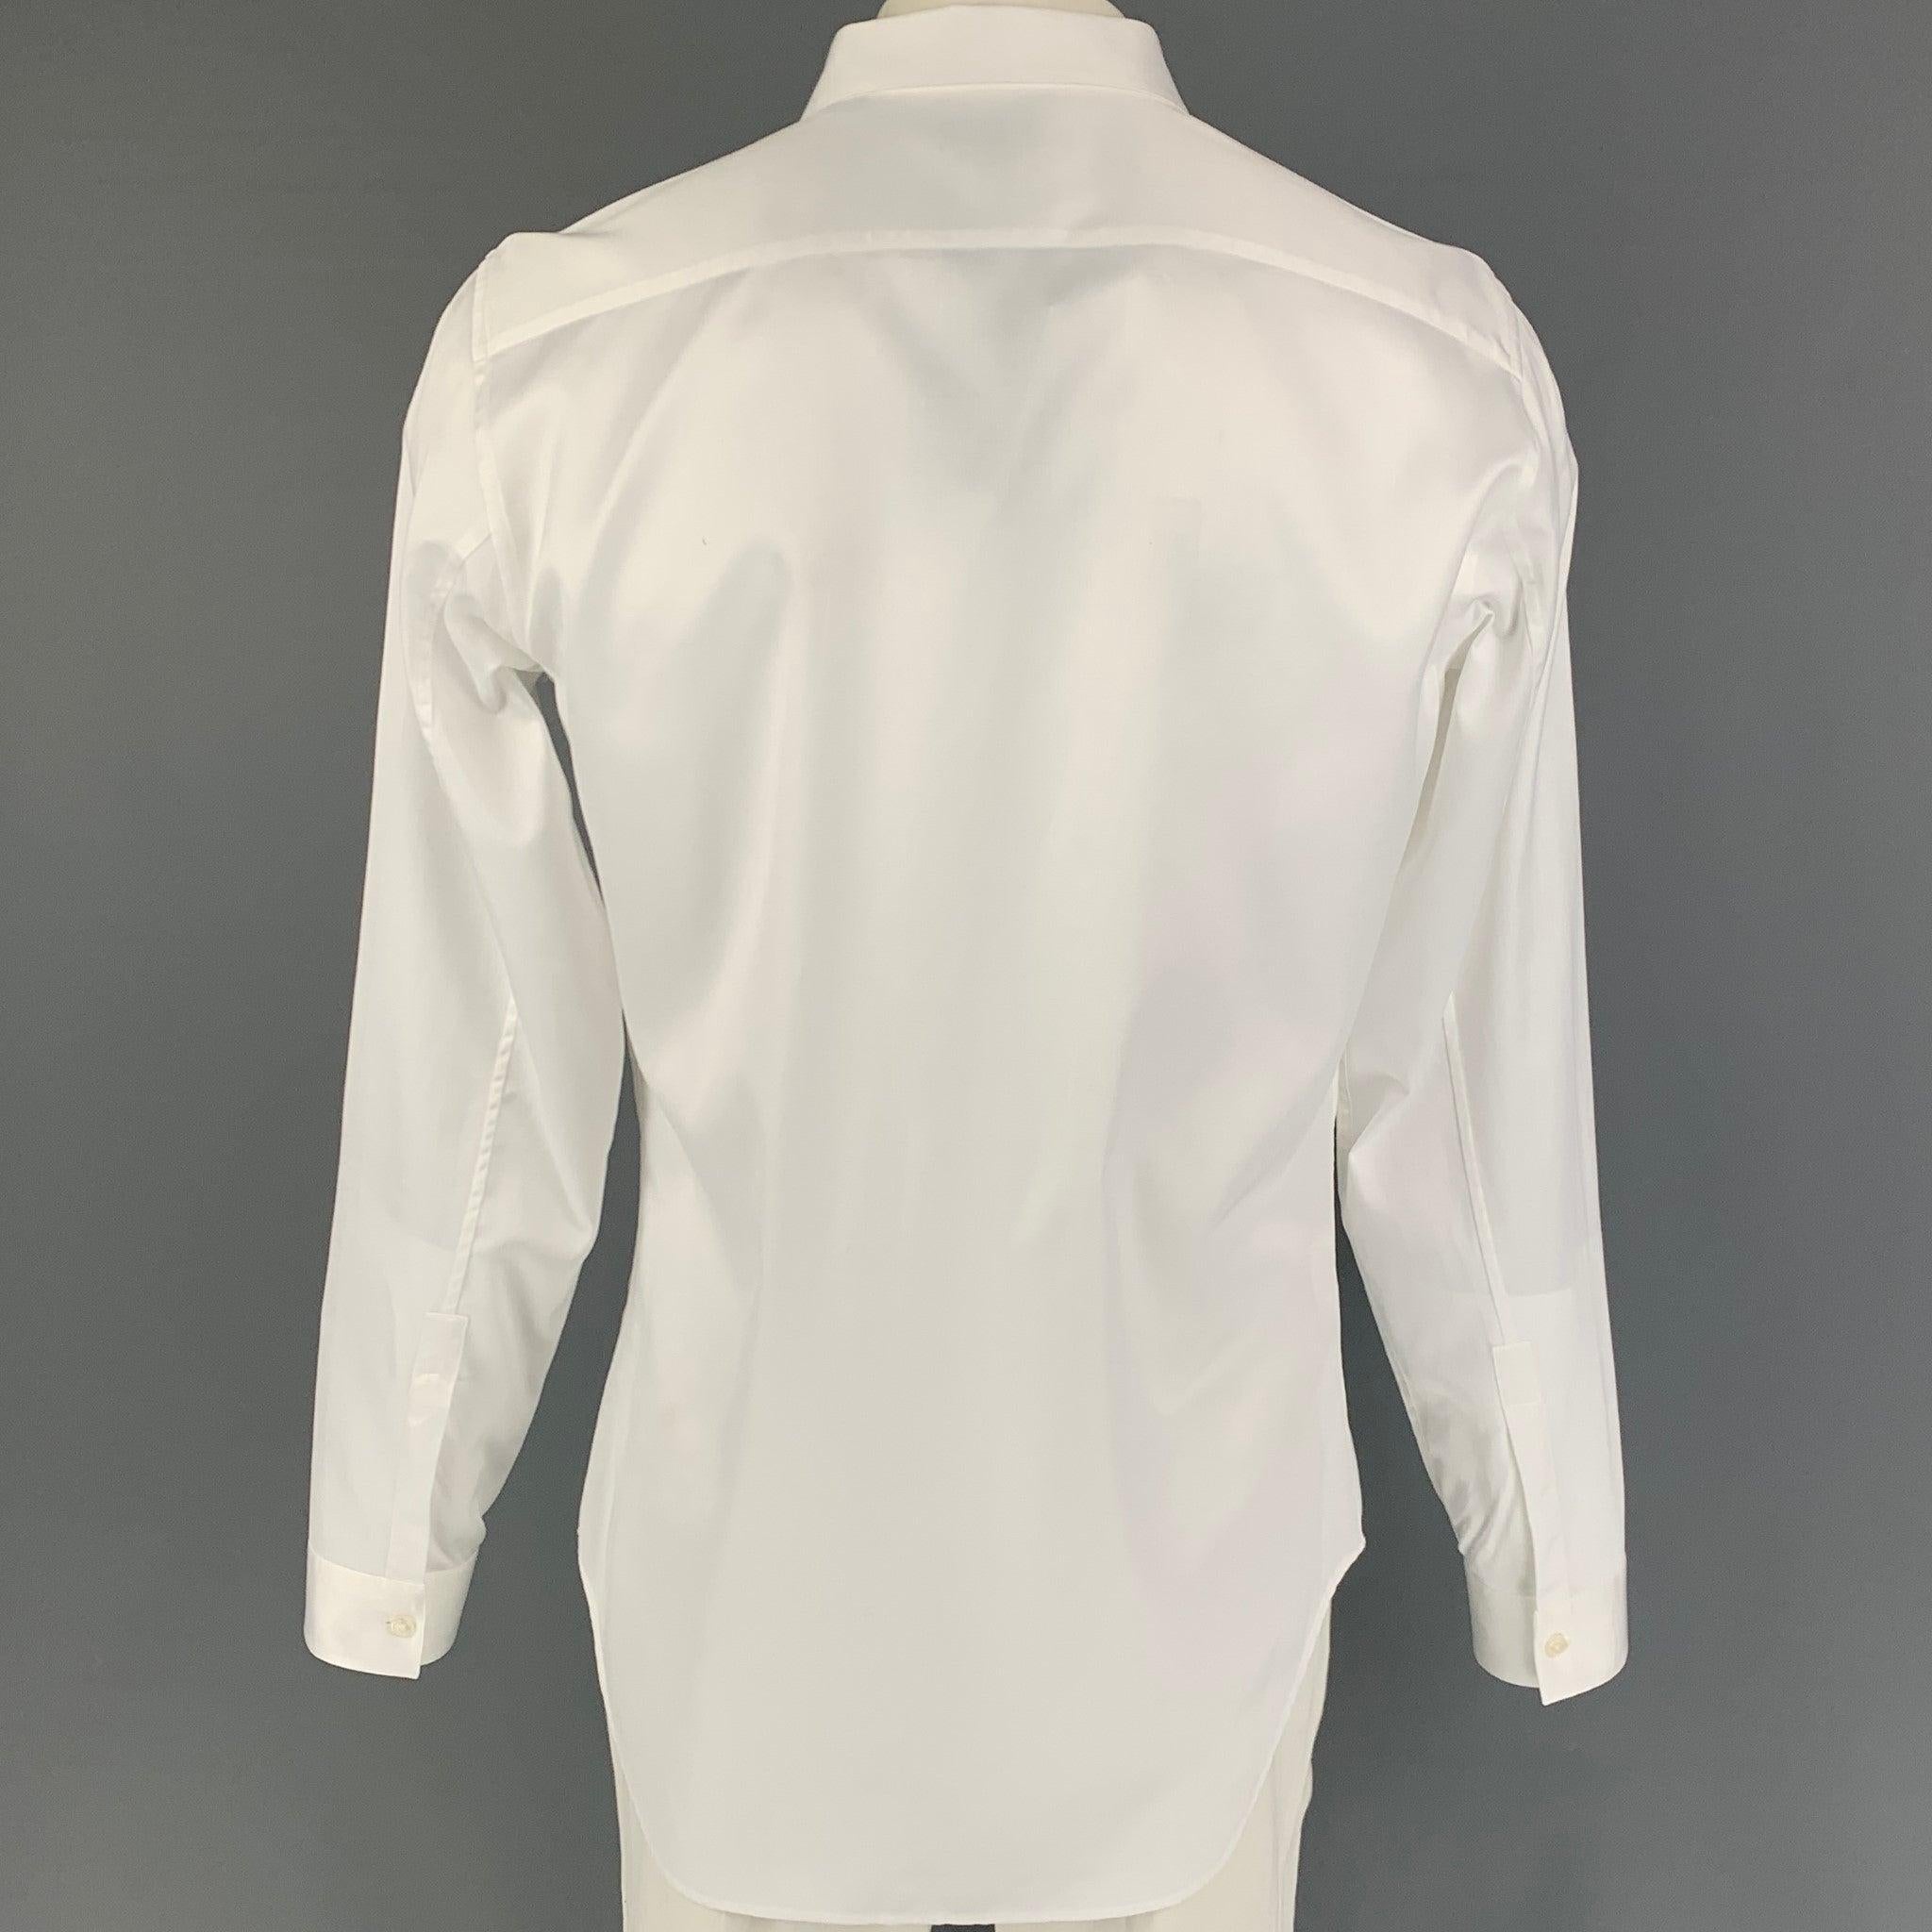 Men's CALVIN KLEIN COLLECTION Size XL White Cotton Long Sleeve Shirt